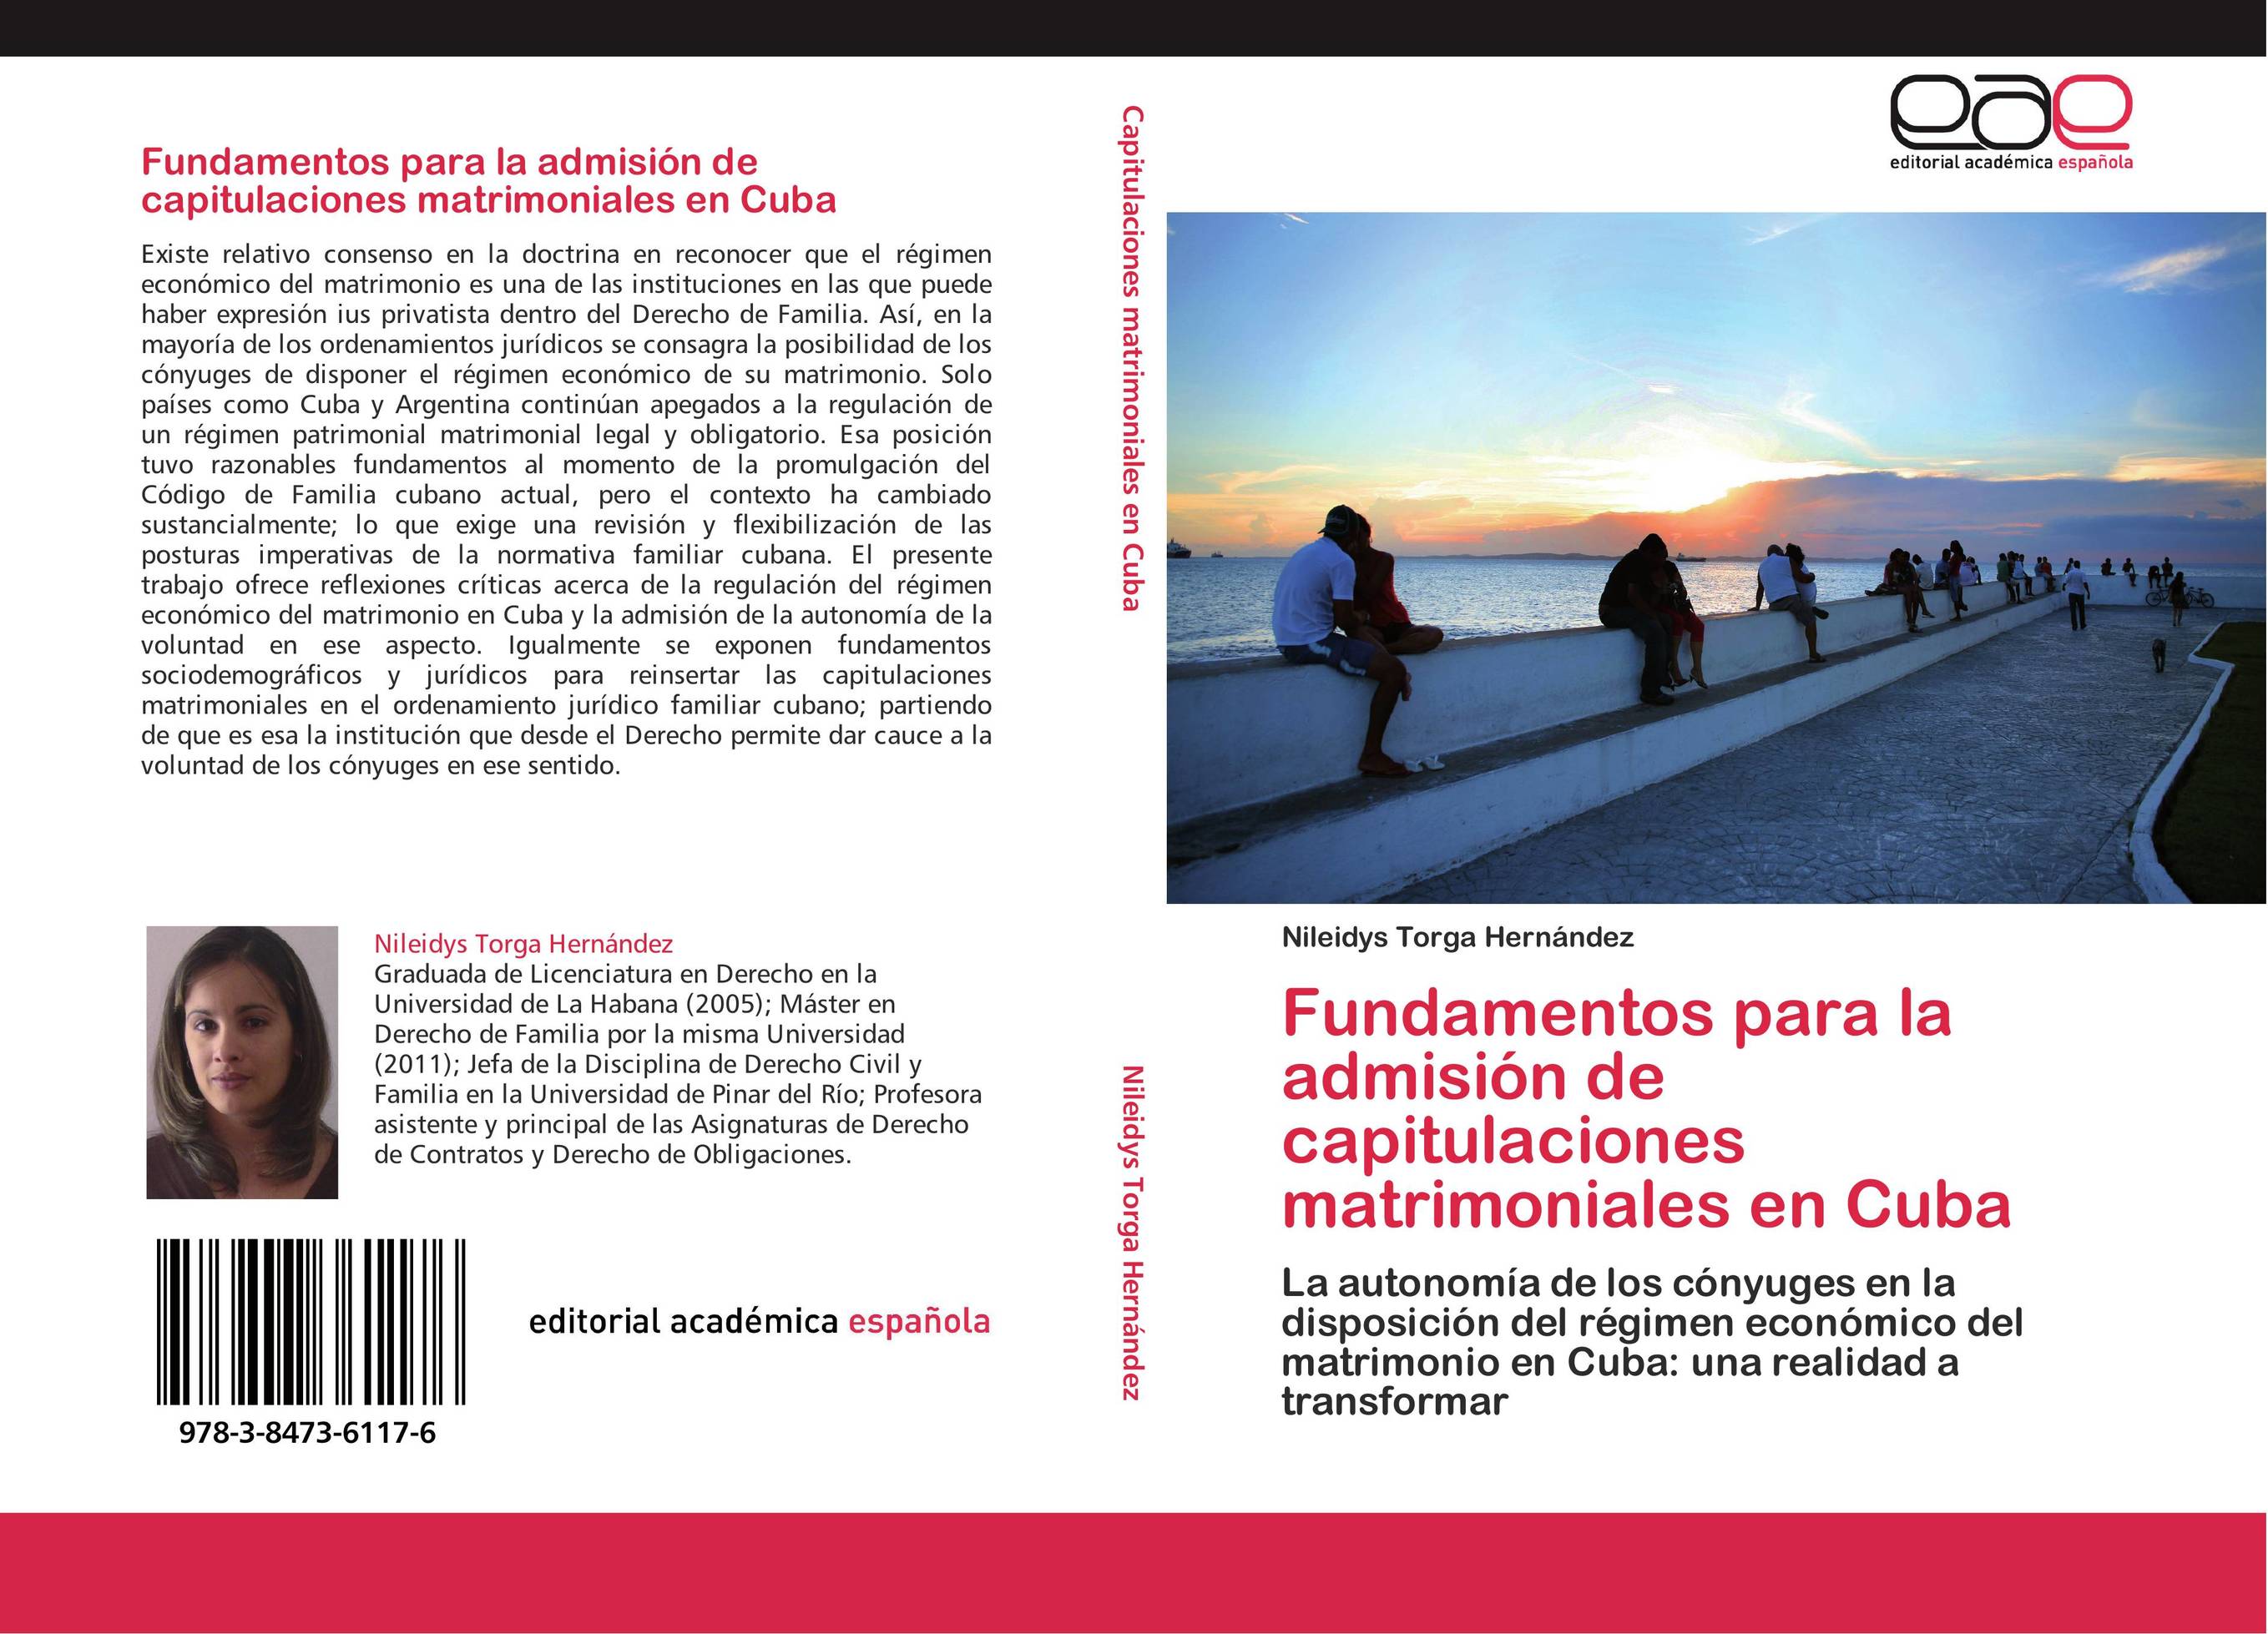 Fundamentos para la admisión de capitulaciones matrimoniales en Cuba